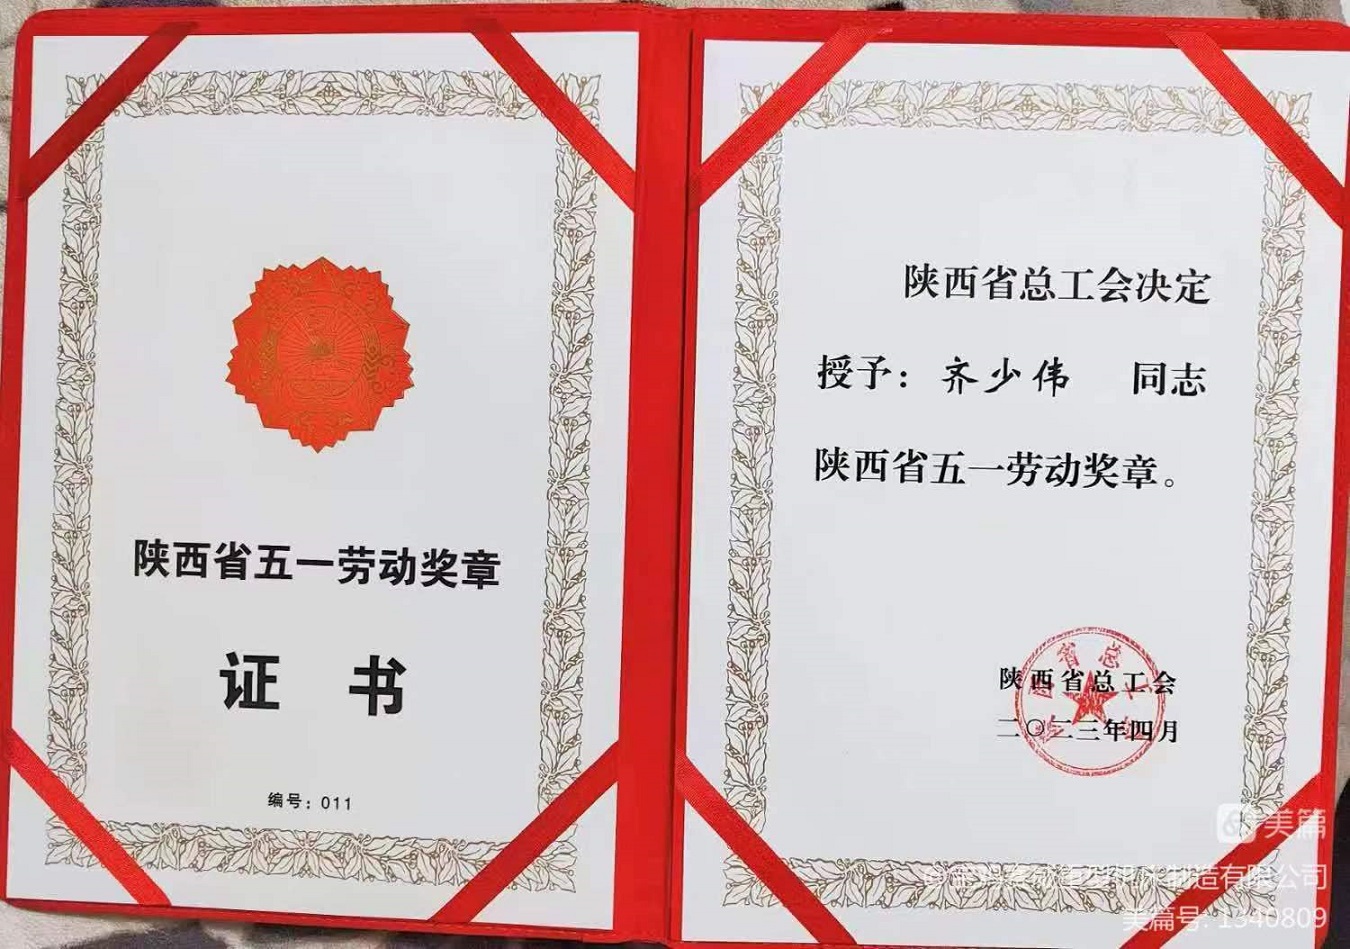 致敬最美勞動者-陜西省五一勞動獎章獲得者齊少偉(圖2)